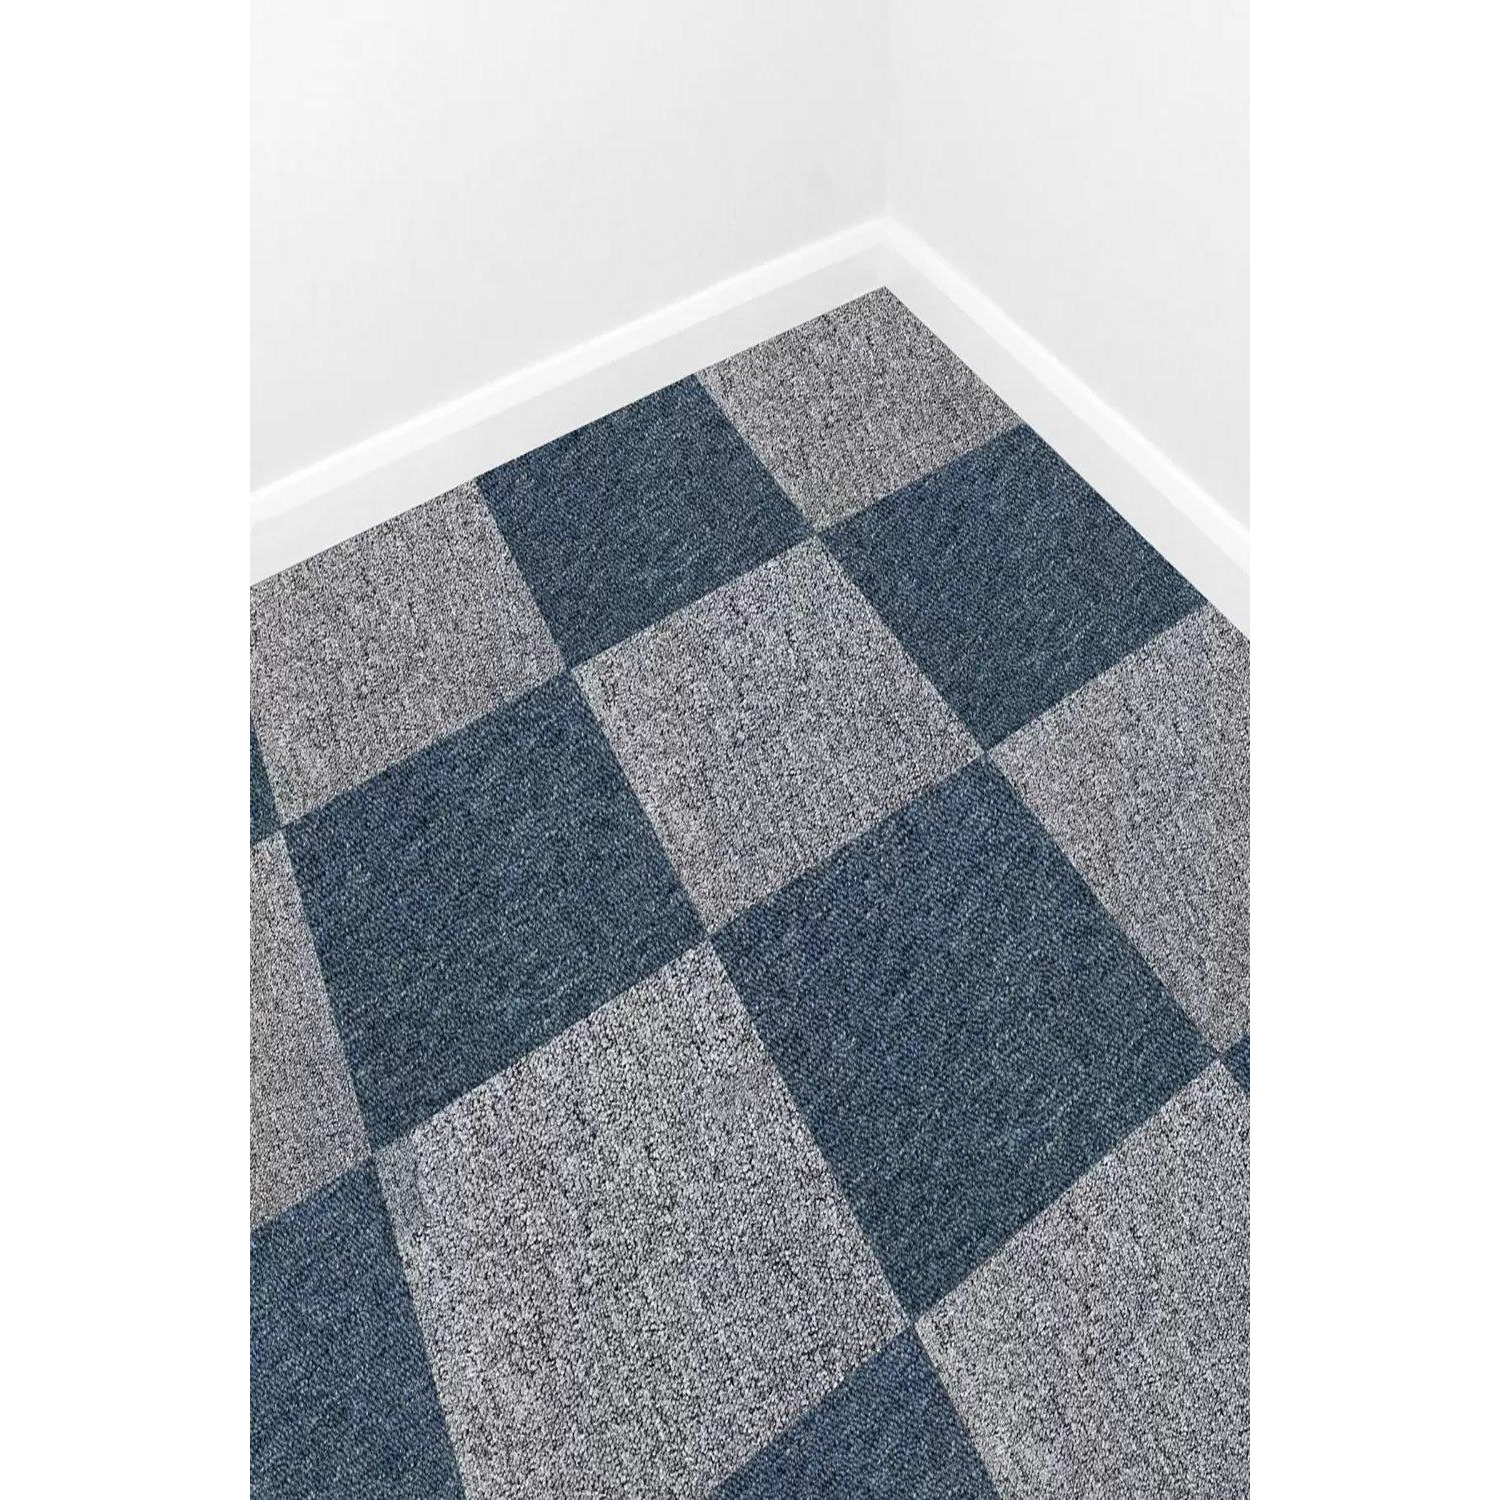 40 x Carpet Tiles 10m2 Storm Blue & Platinum Grey - image 1